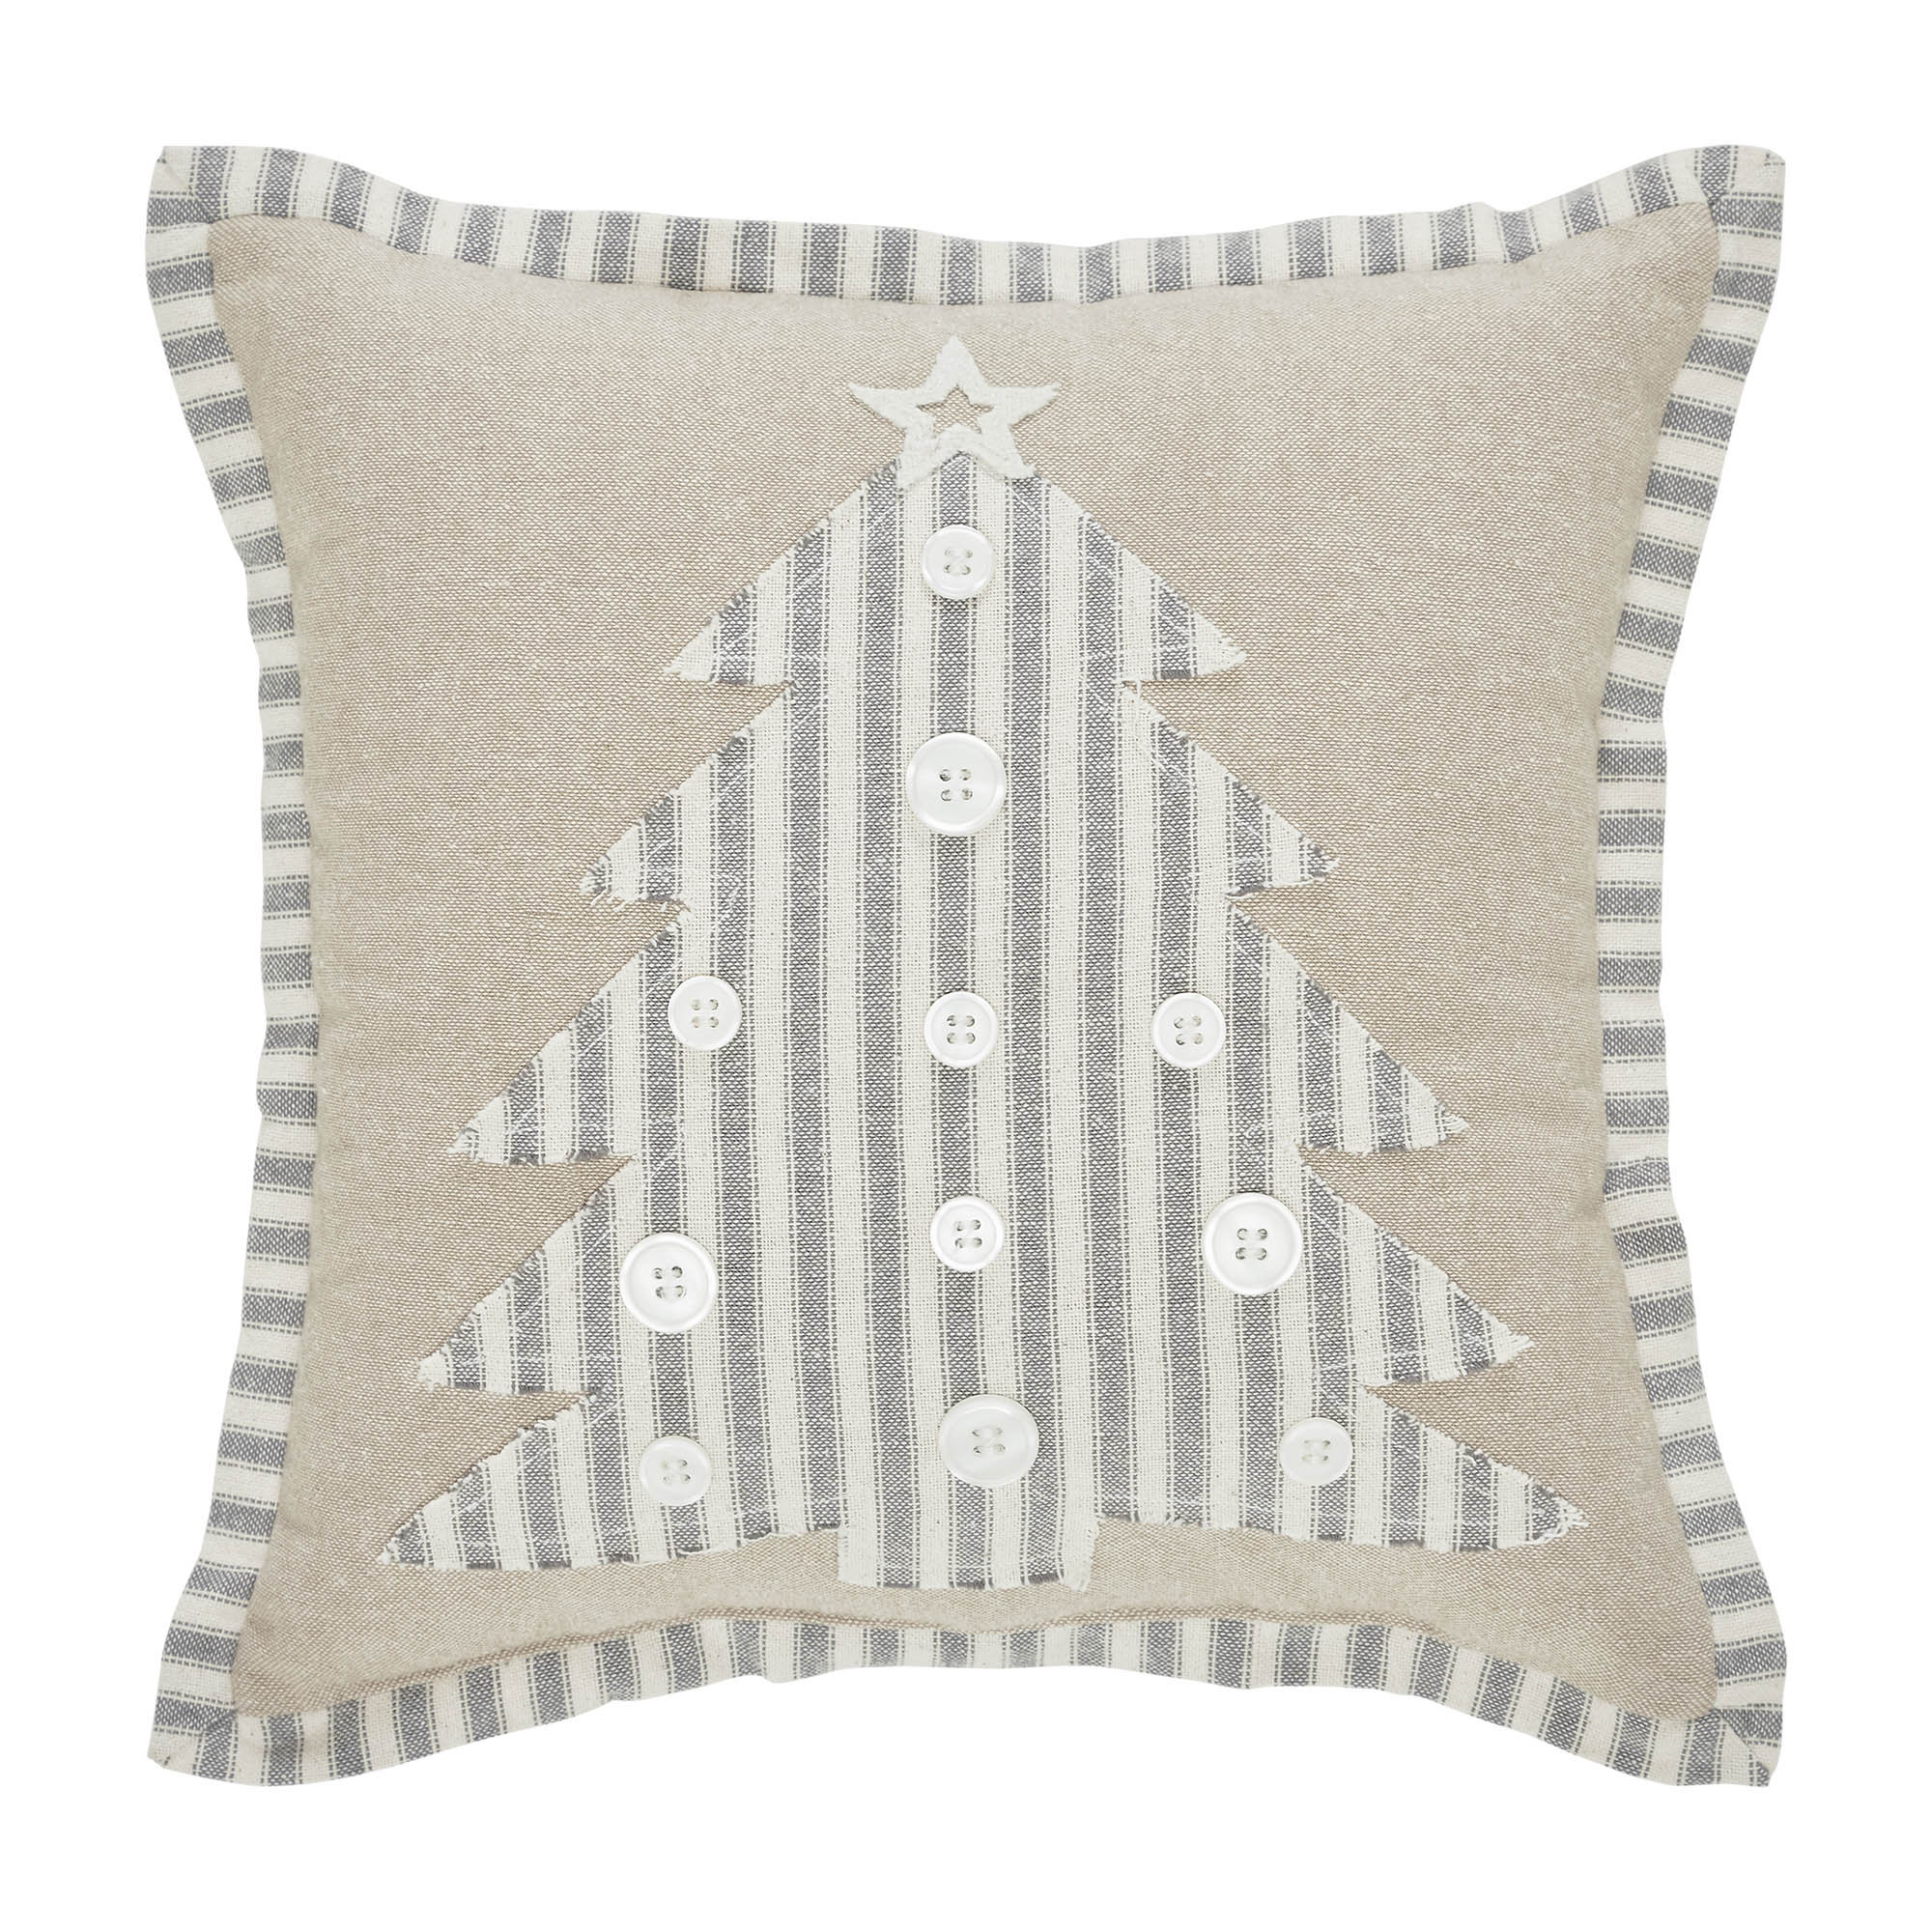 https://assets.wfcdn.com/im/77651312/compr-r85/2546/254688731/inse-striped-100-cotton-shell-polyester-pillow-fill-throw-pillow.jpg